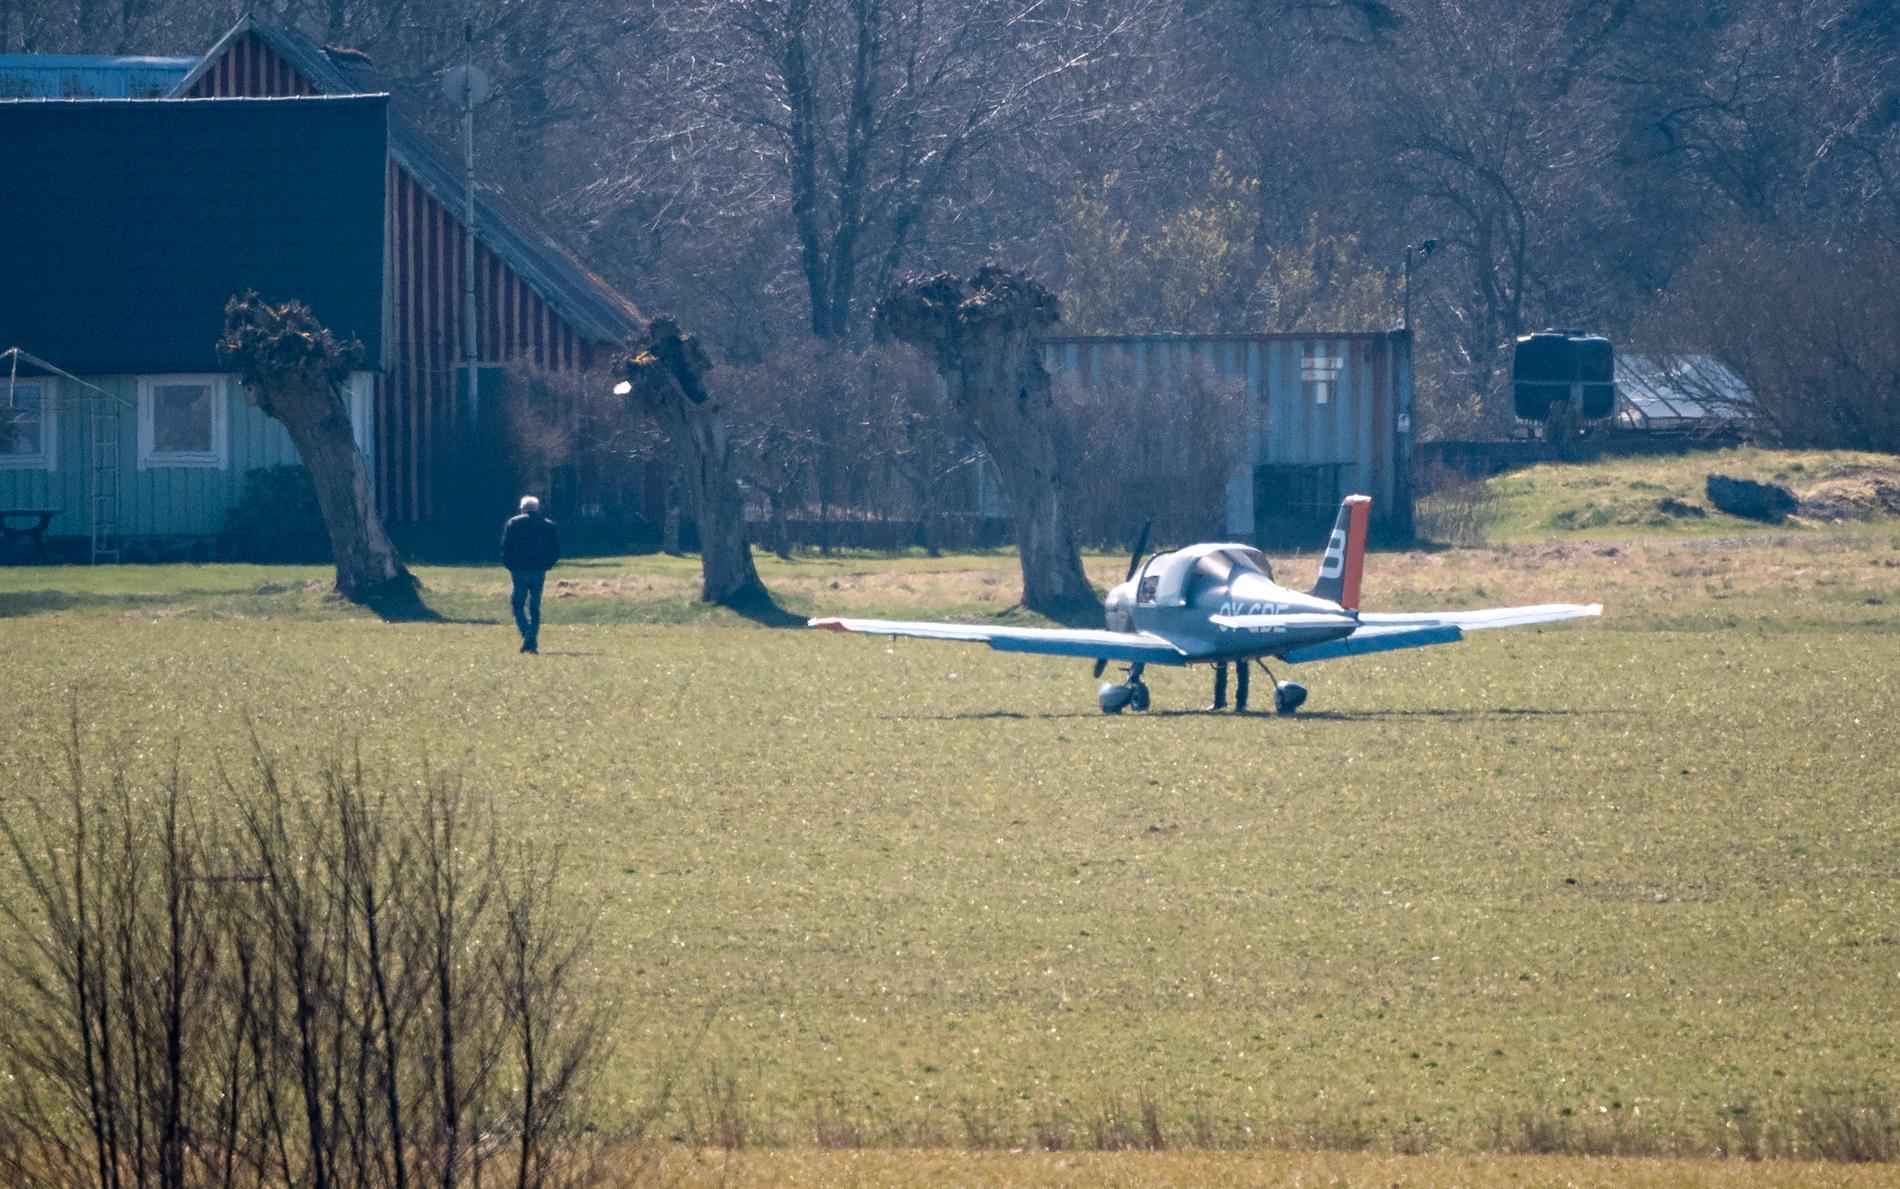 Ett enmotorigt flygplan från flygskolan i Ljungbyhed tvingades nödlanda i terrängen nära Billesholm utanför Helsingborg.